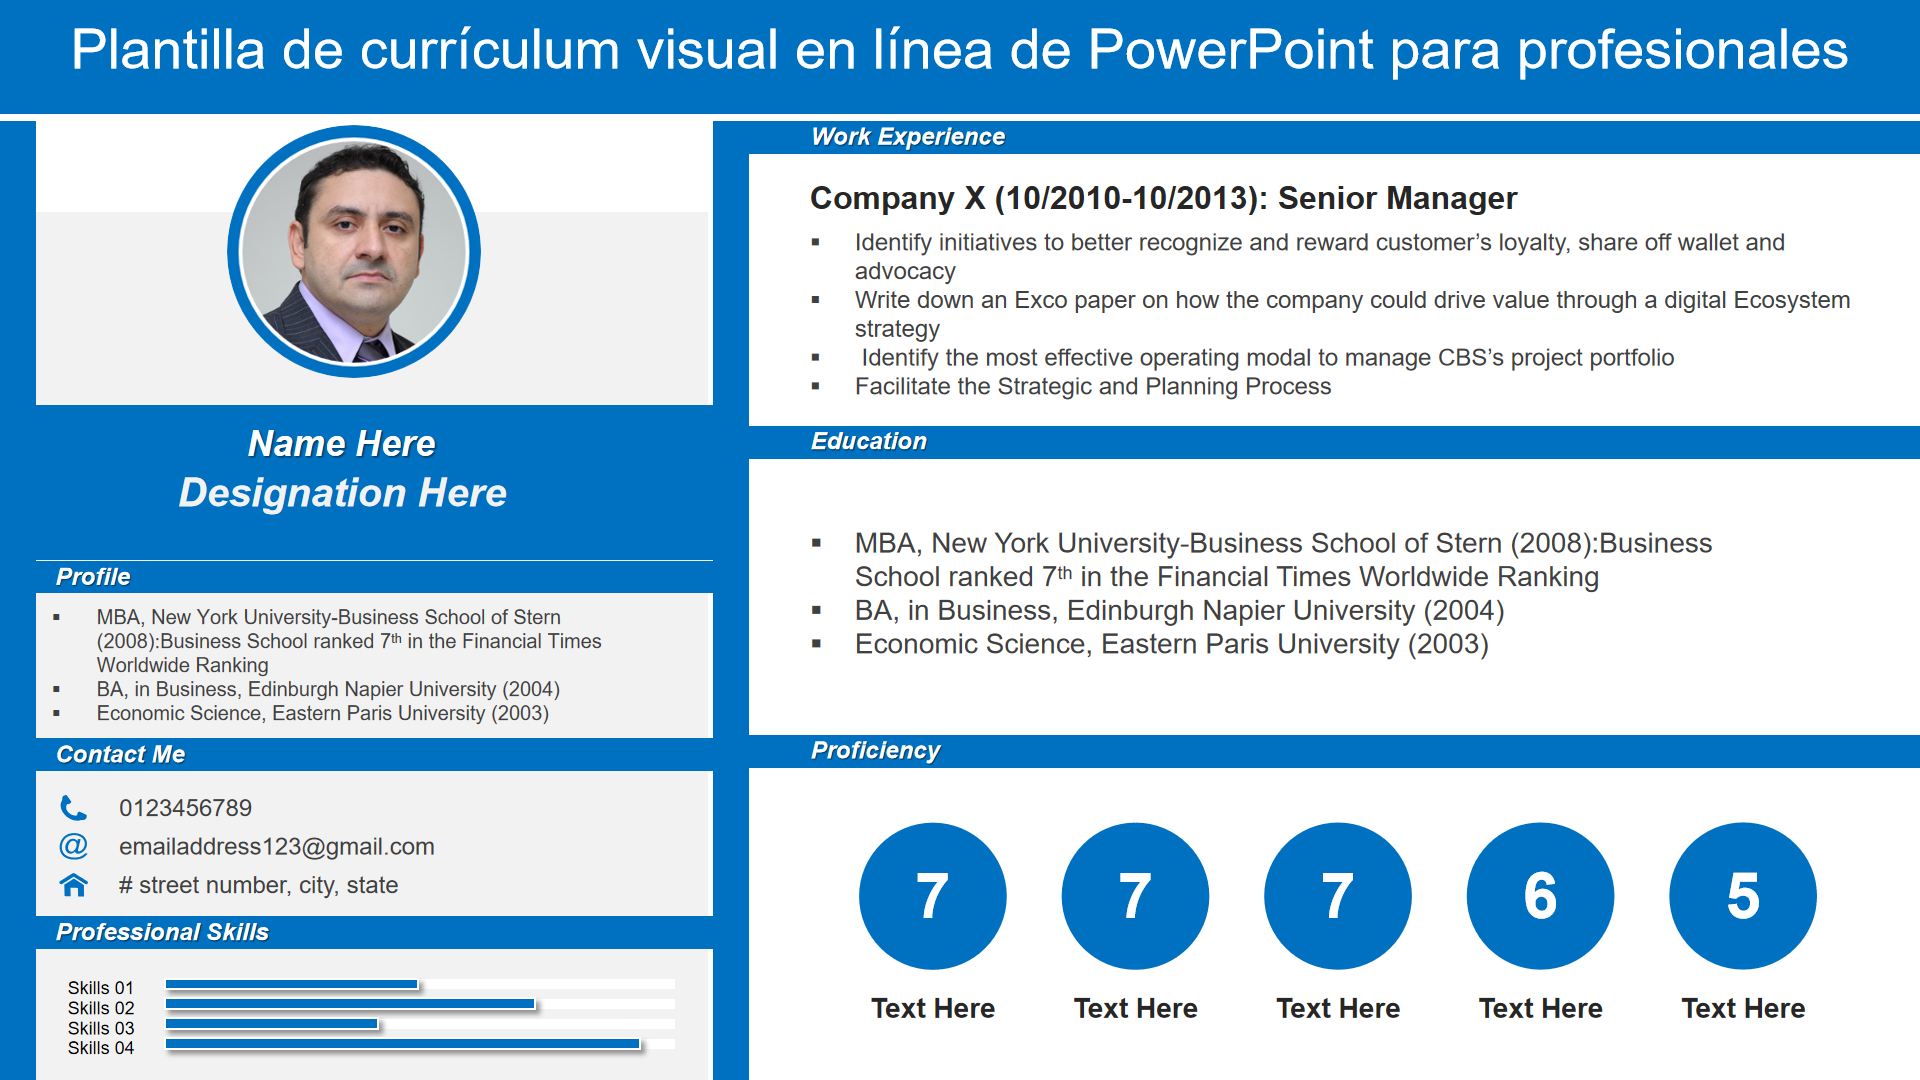 Plantilla de currículum visual en línea de PowerPoint para profesionales